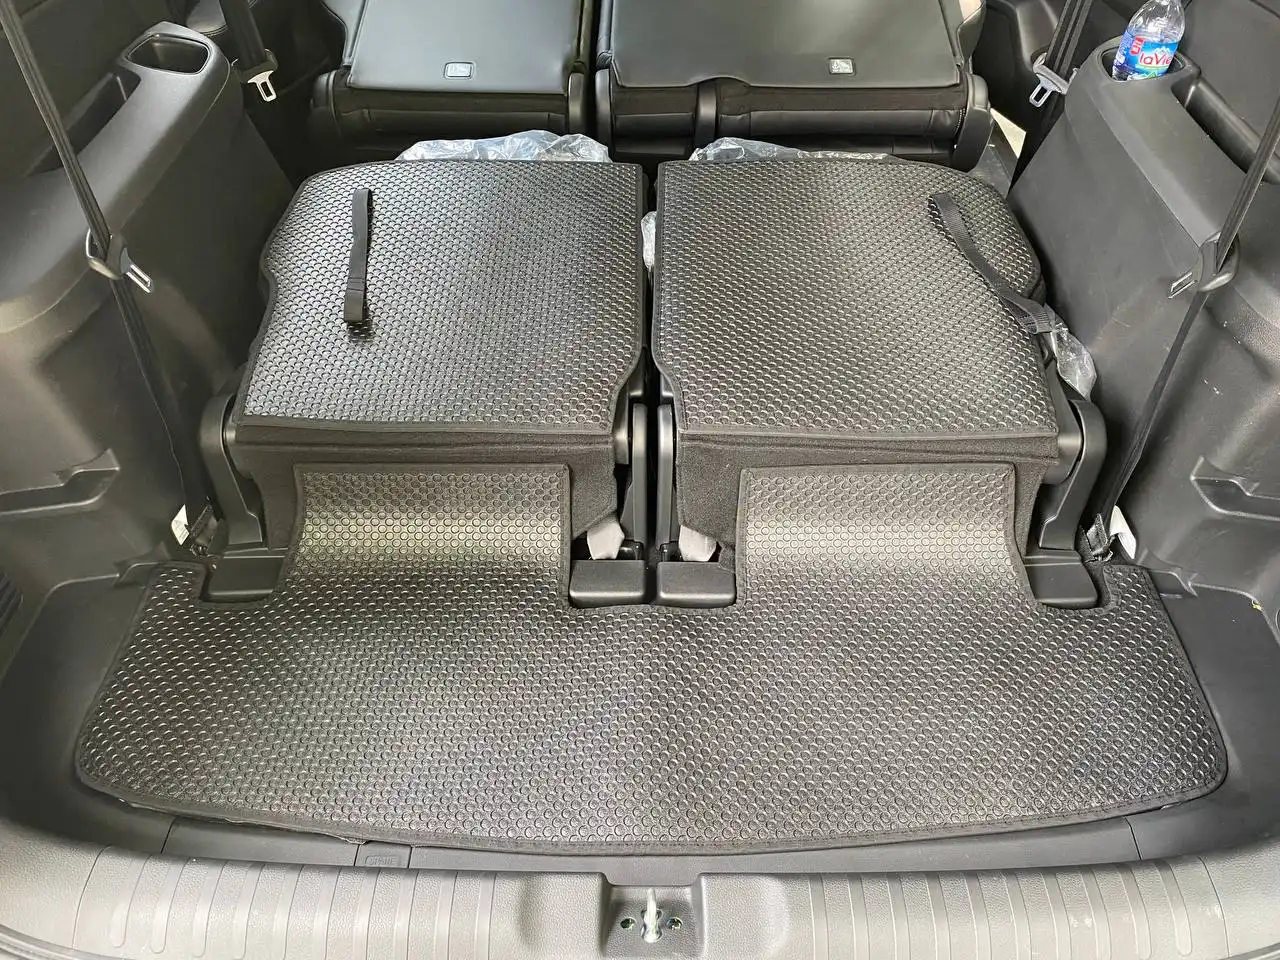 Ốp lưng ghế hàng 3 và cốp giúp bảo vệ xe toàn diện khi chở đồ